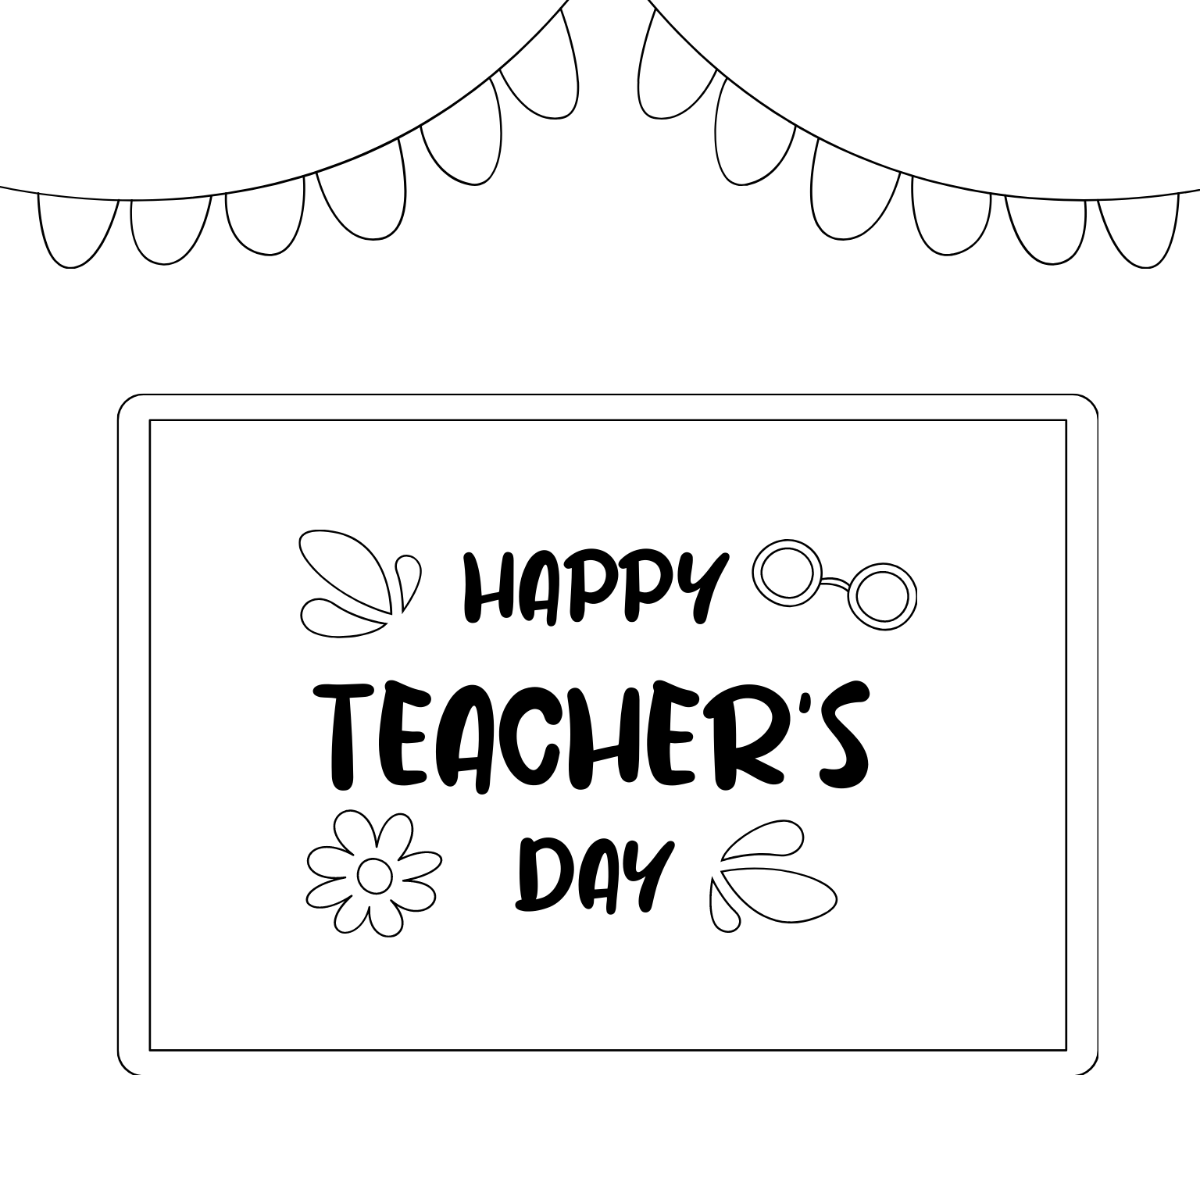 Happy Teachers Day Chalkboard Drawing Template